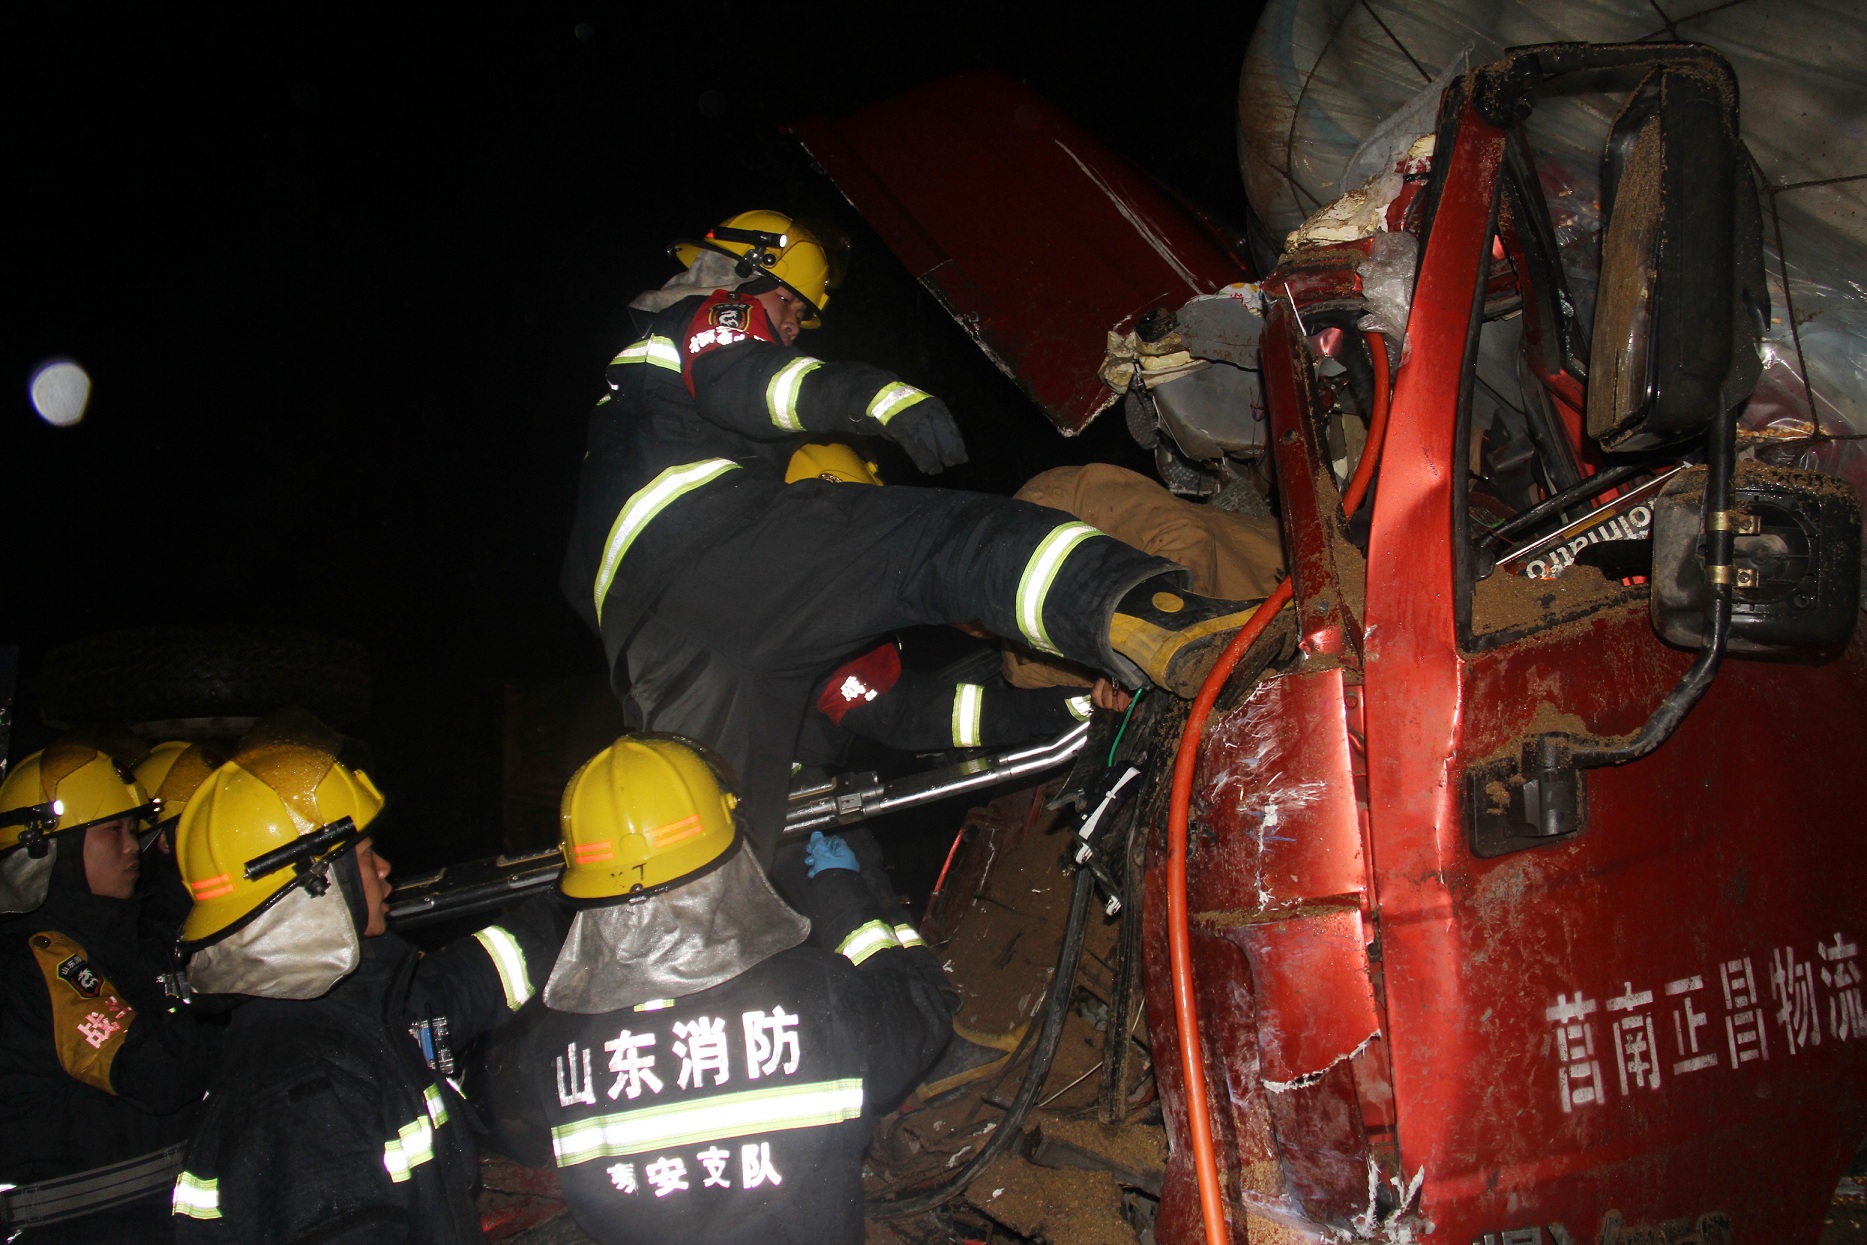 雨夜两车相撞一人被困 泰安消防紧急救援